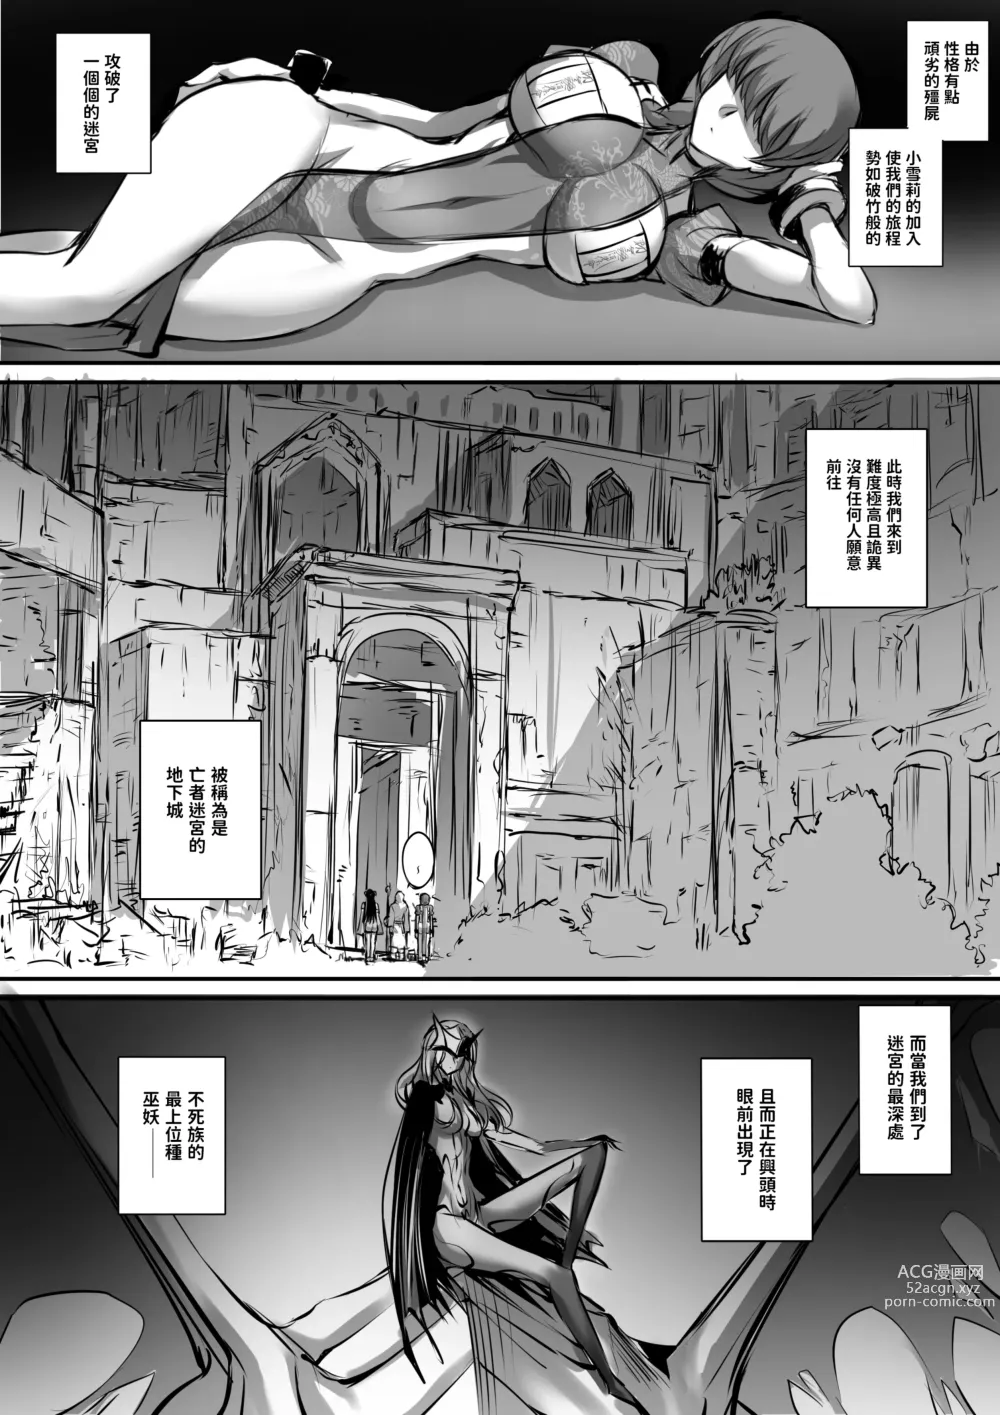 Page 2 of doujinshi 迷宮で格闘娘の死体を拾ってキョンシーにしてみた話3